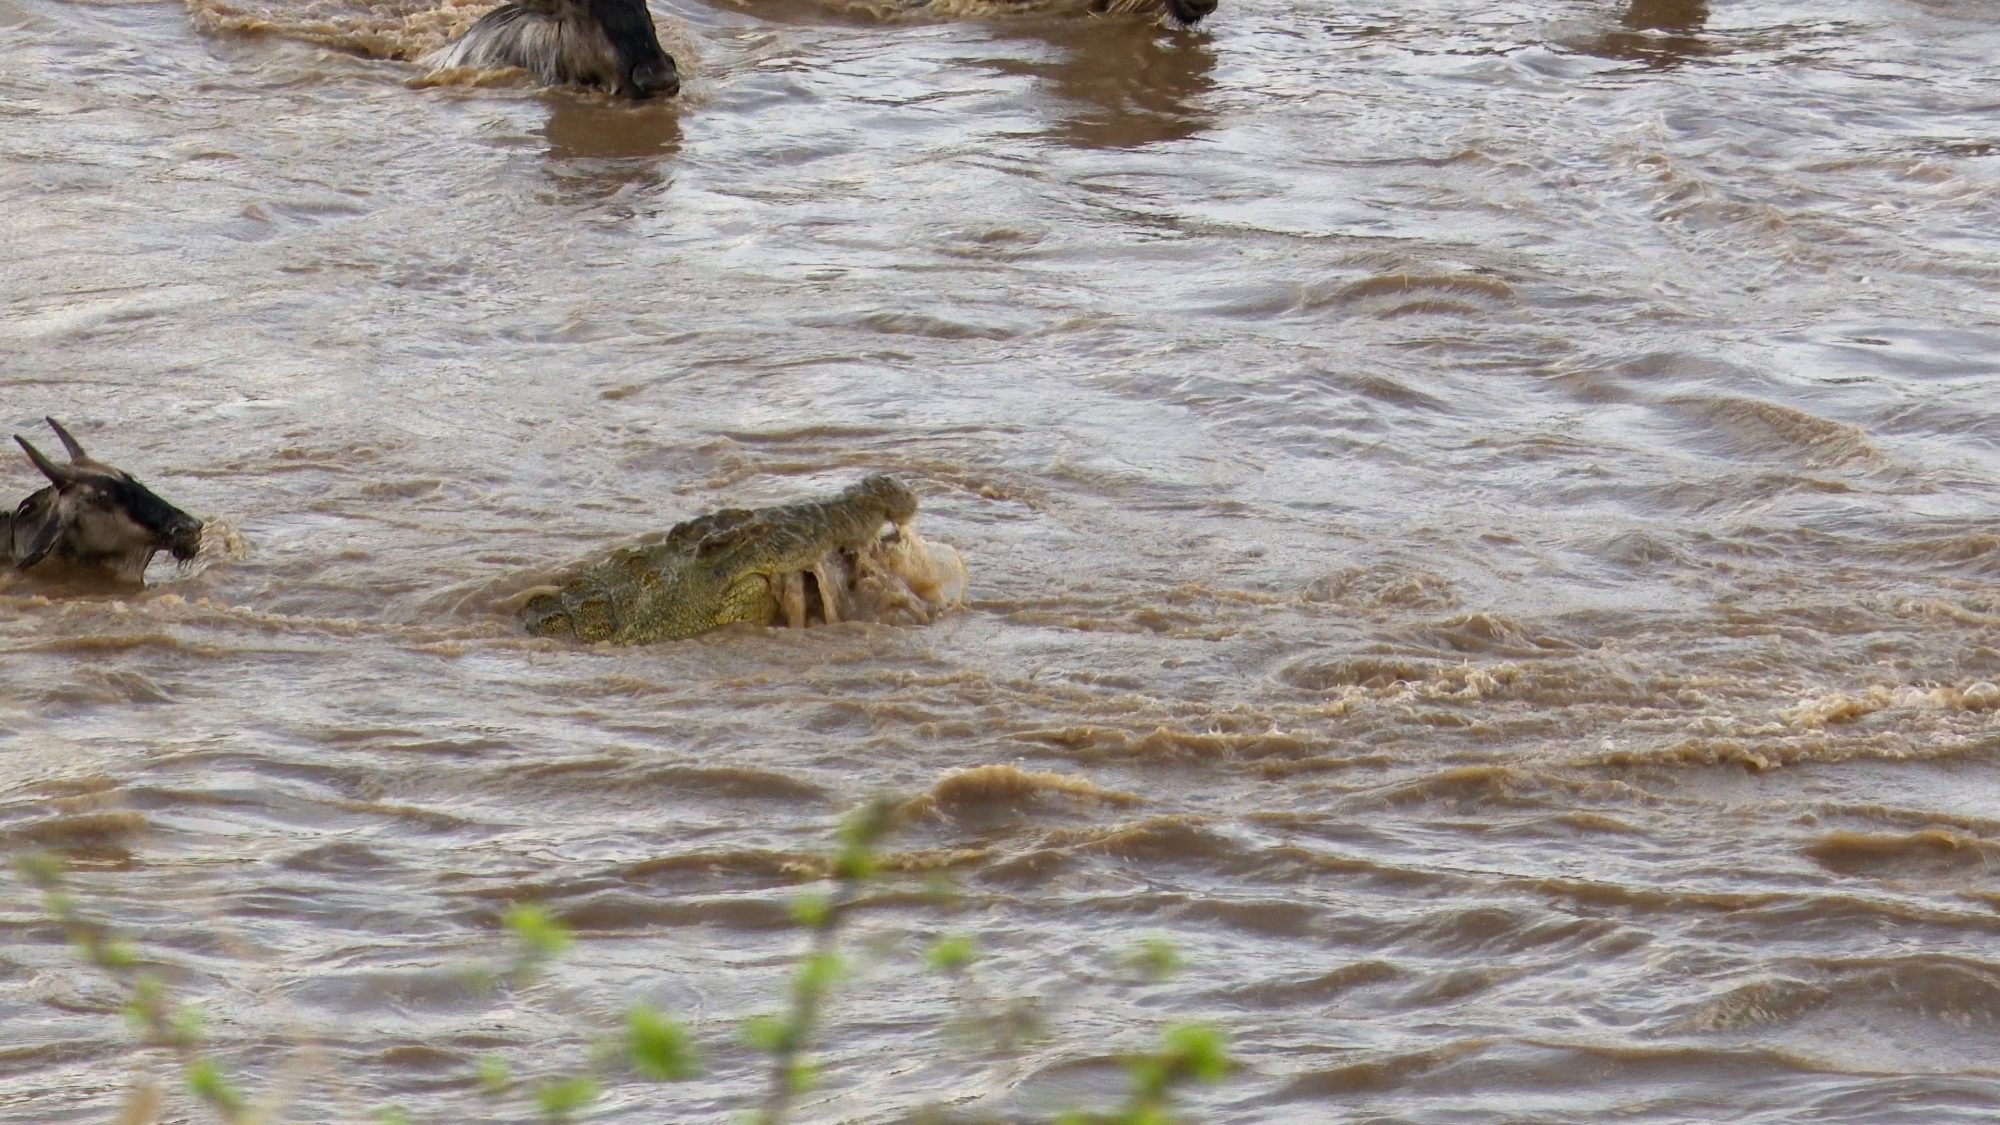 Crocodile attack! – Tanzania 2019